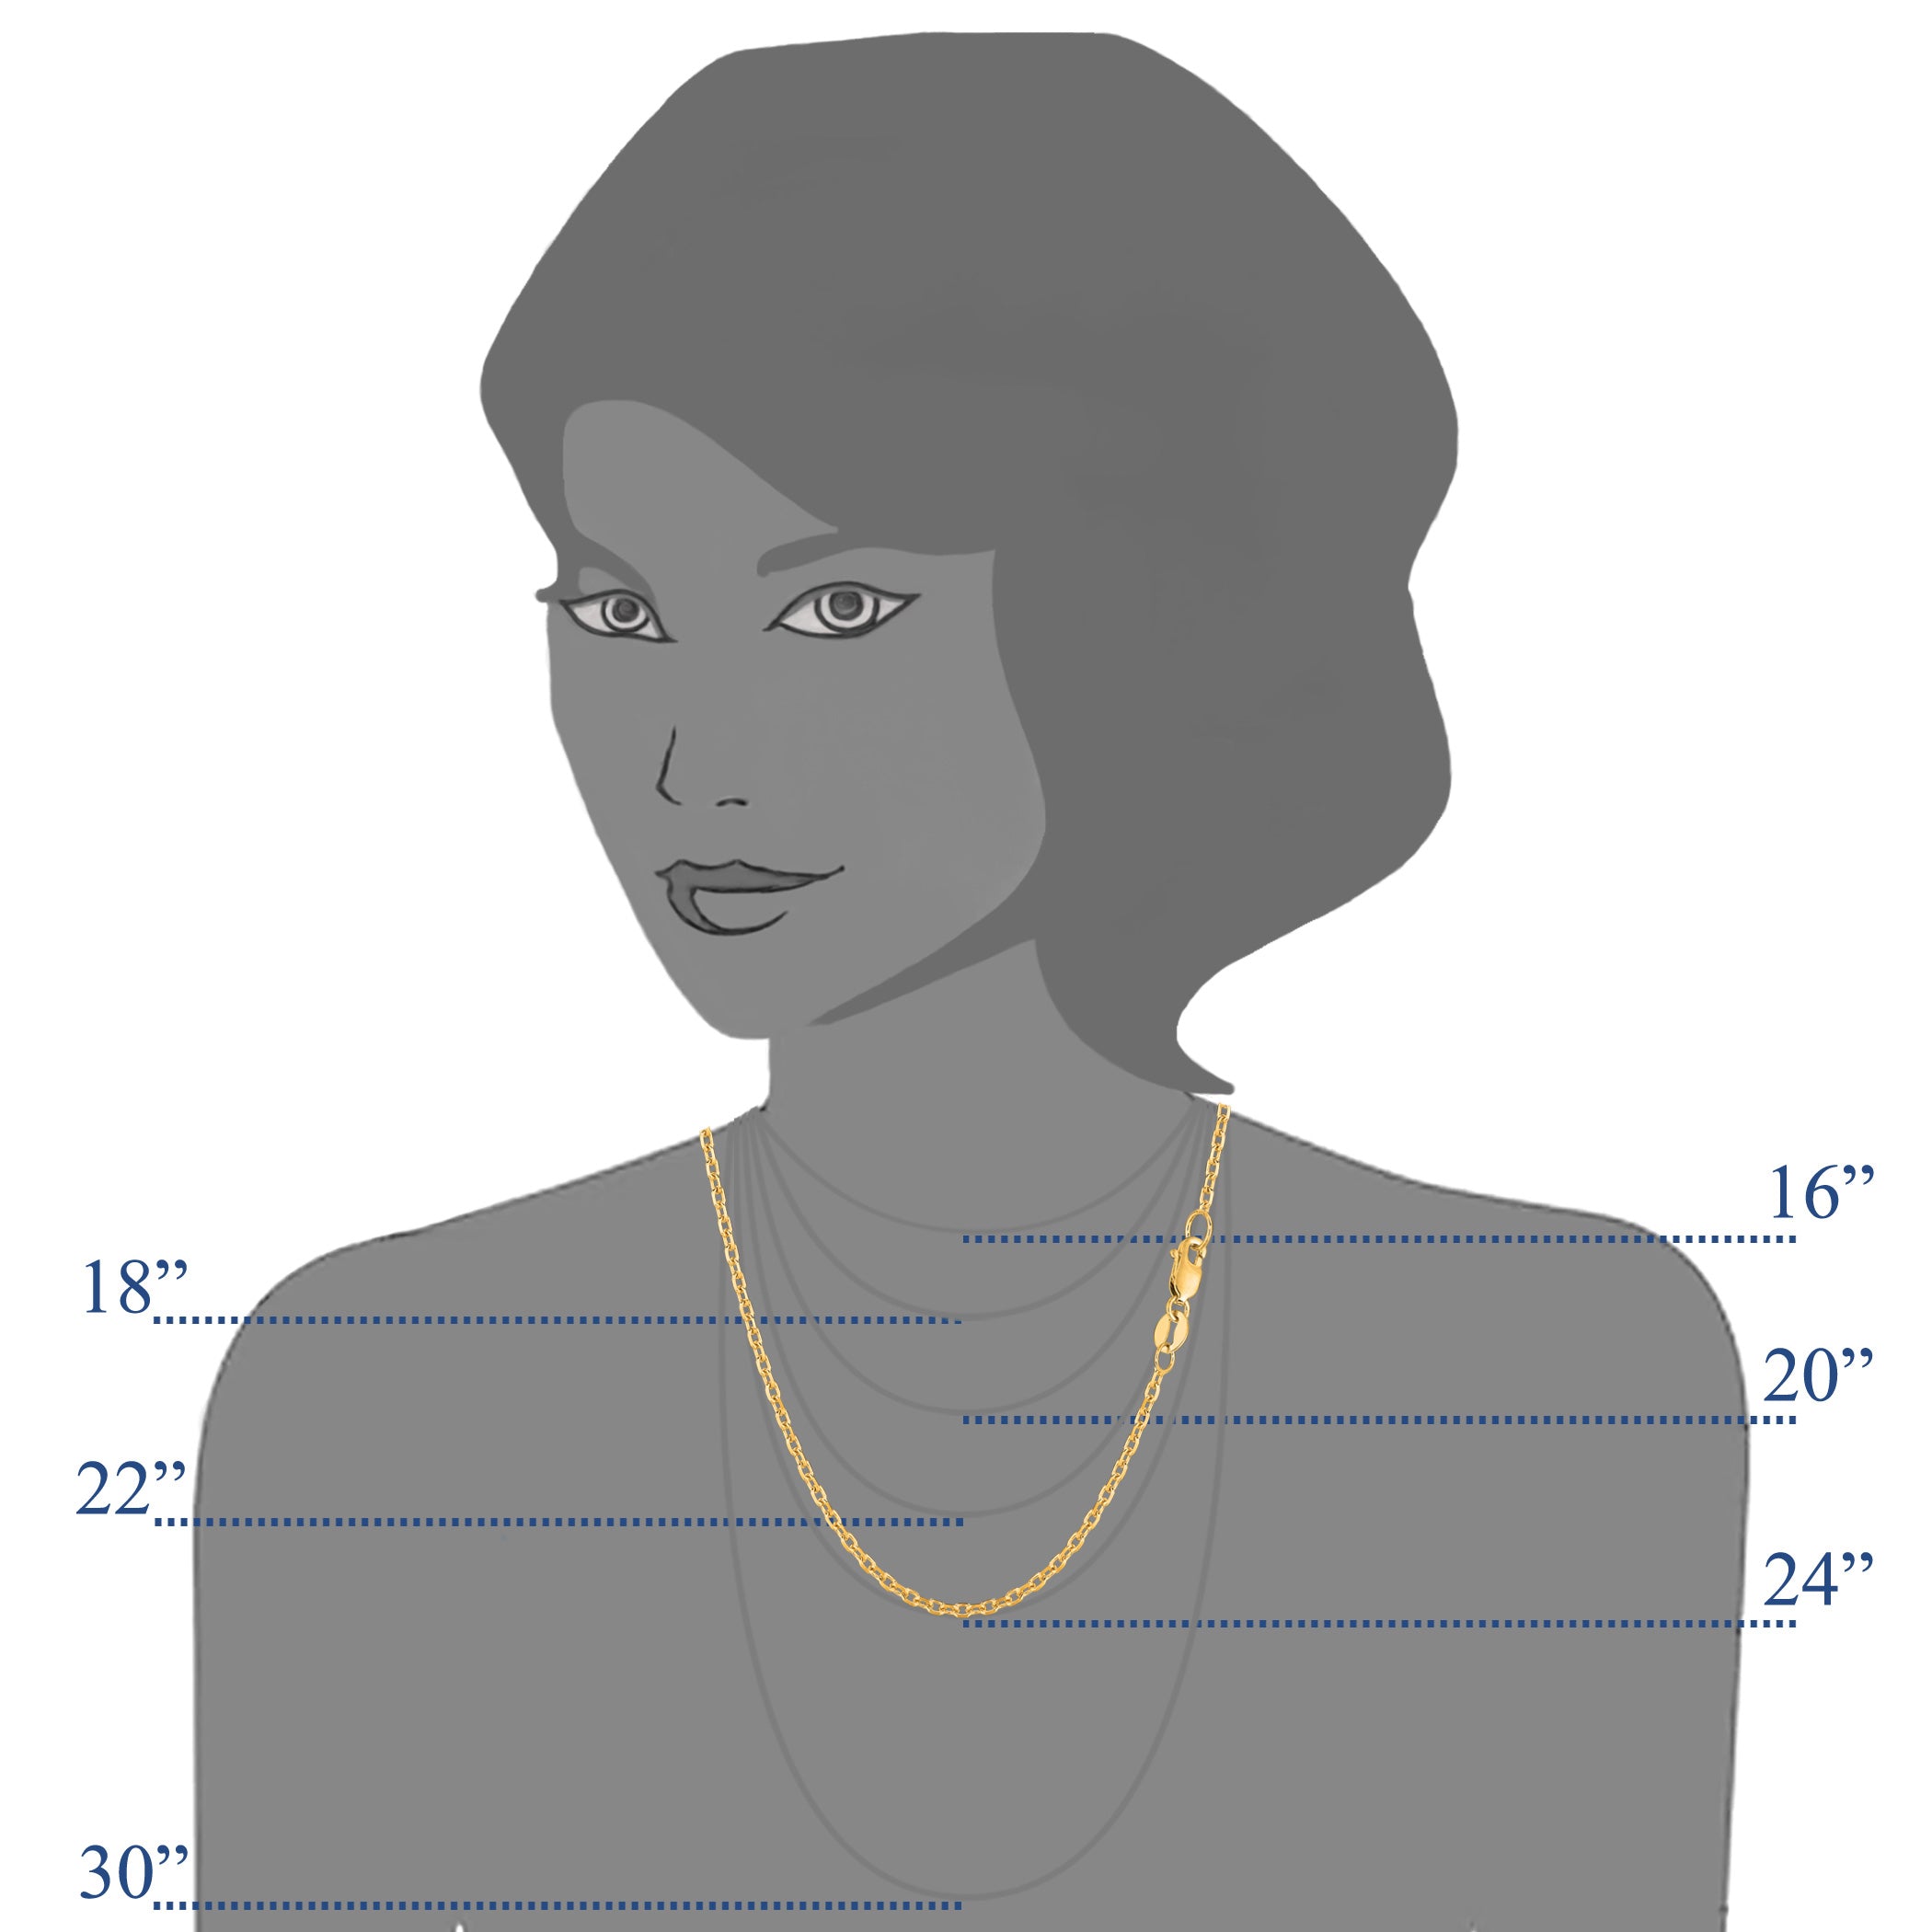 Collar de cadena con eslabones tipo cable de oro amarillo de 14 k, joyería fina de diseño de 1,9 mm para hombres y mujeres